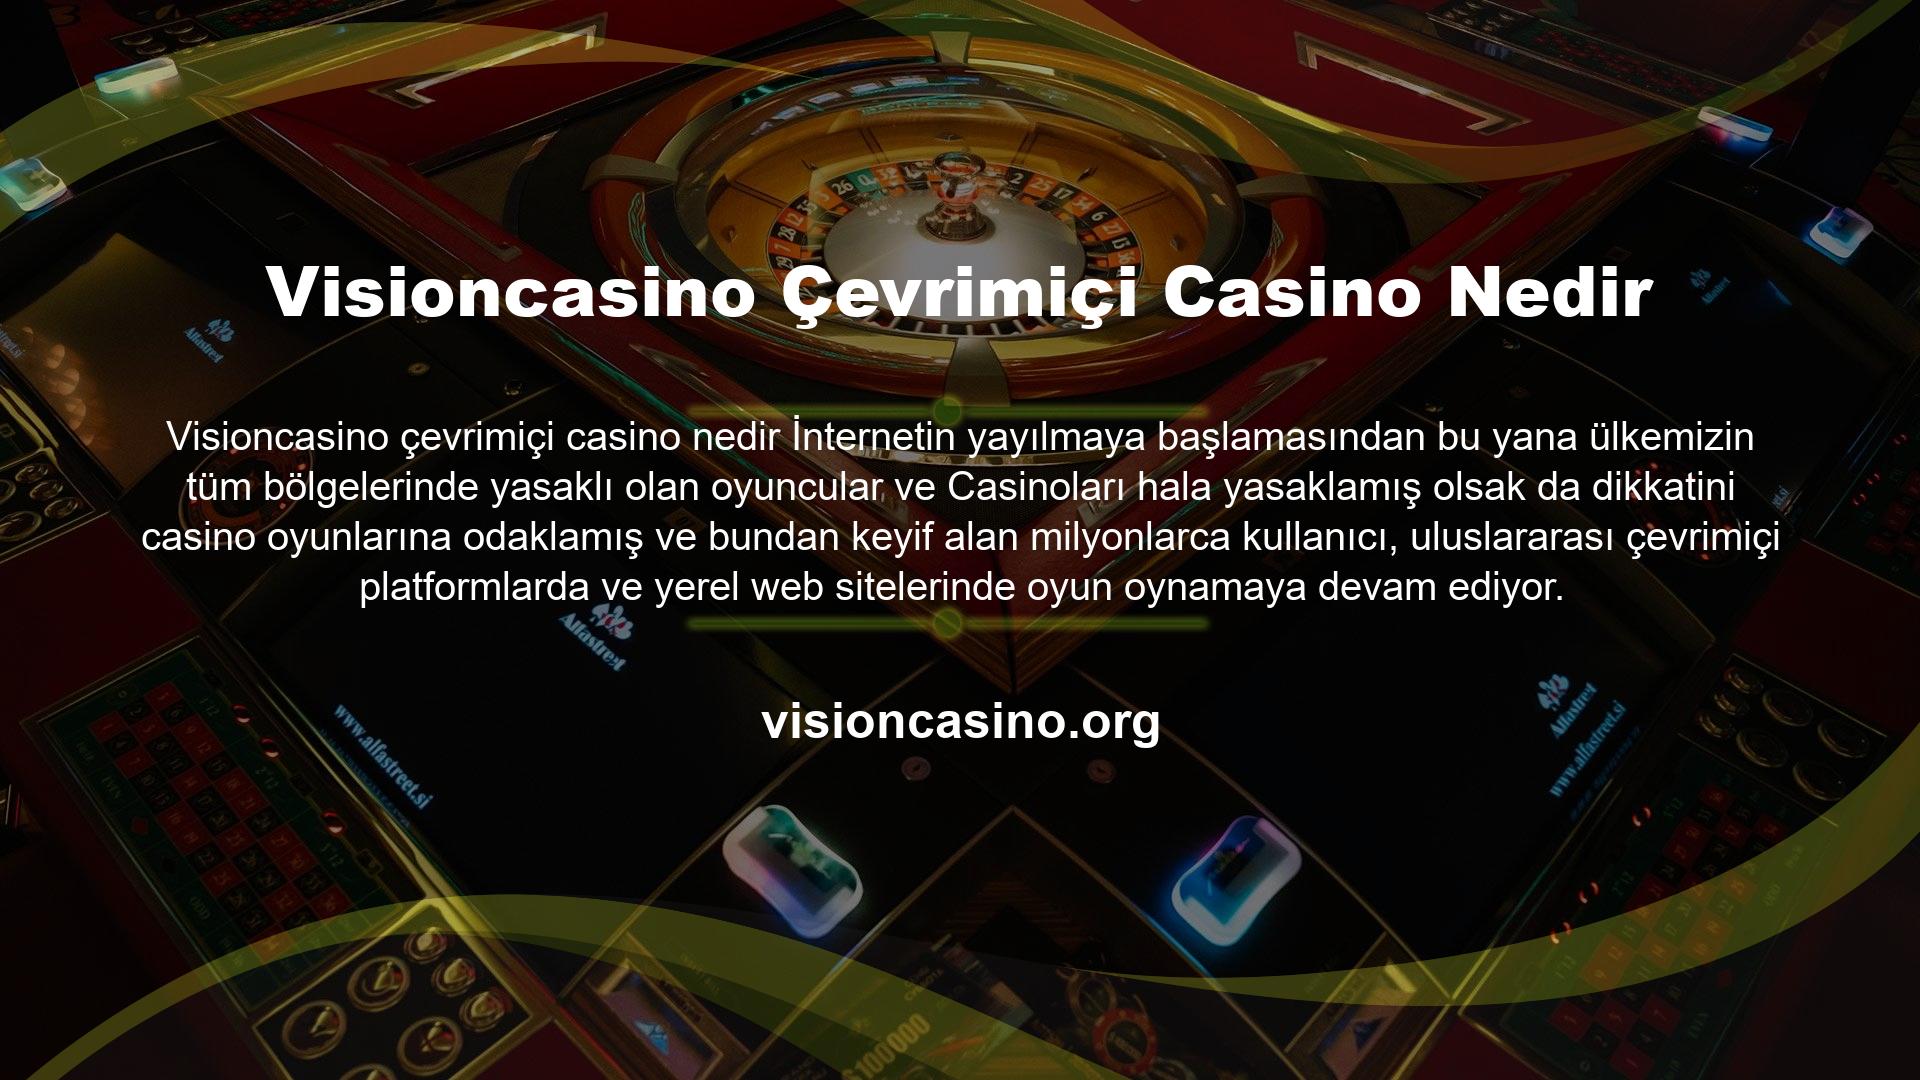 Poker, blackjack, slot makineleri ve daha fazlasını sunan online casinolarda online Visioncasino blackjack oyunlarını öğrenebilir, oynayabilir ve kazanabilirsiniz